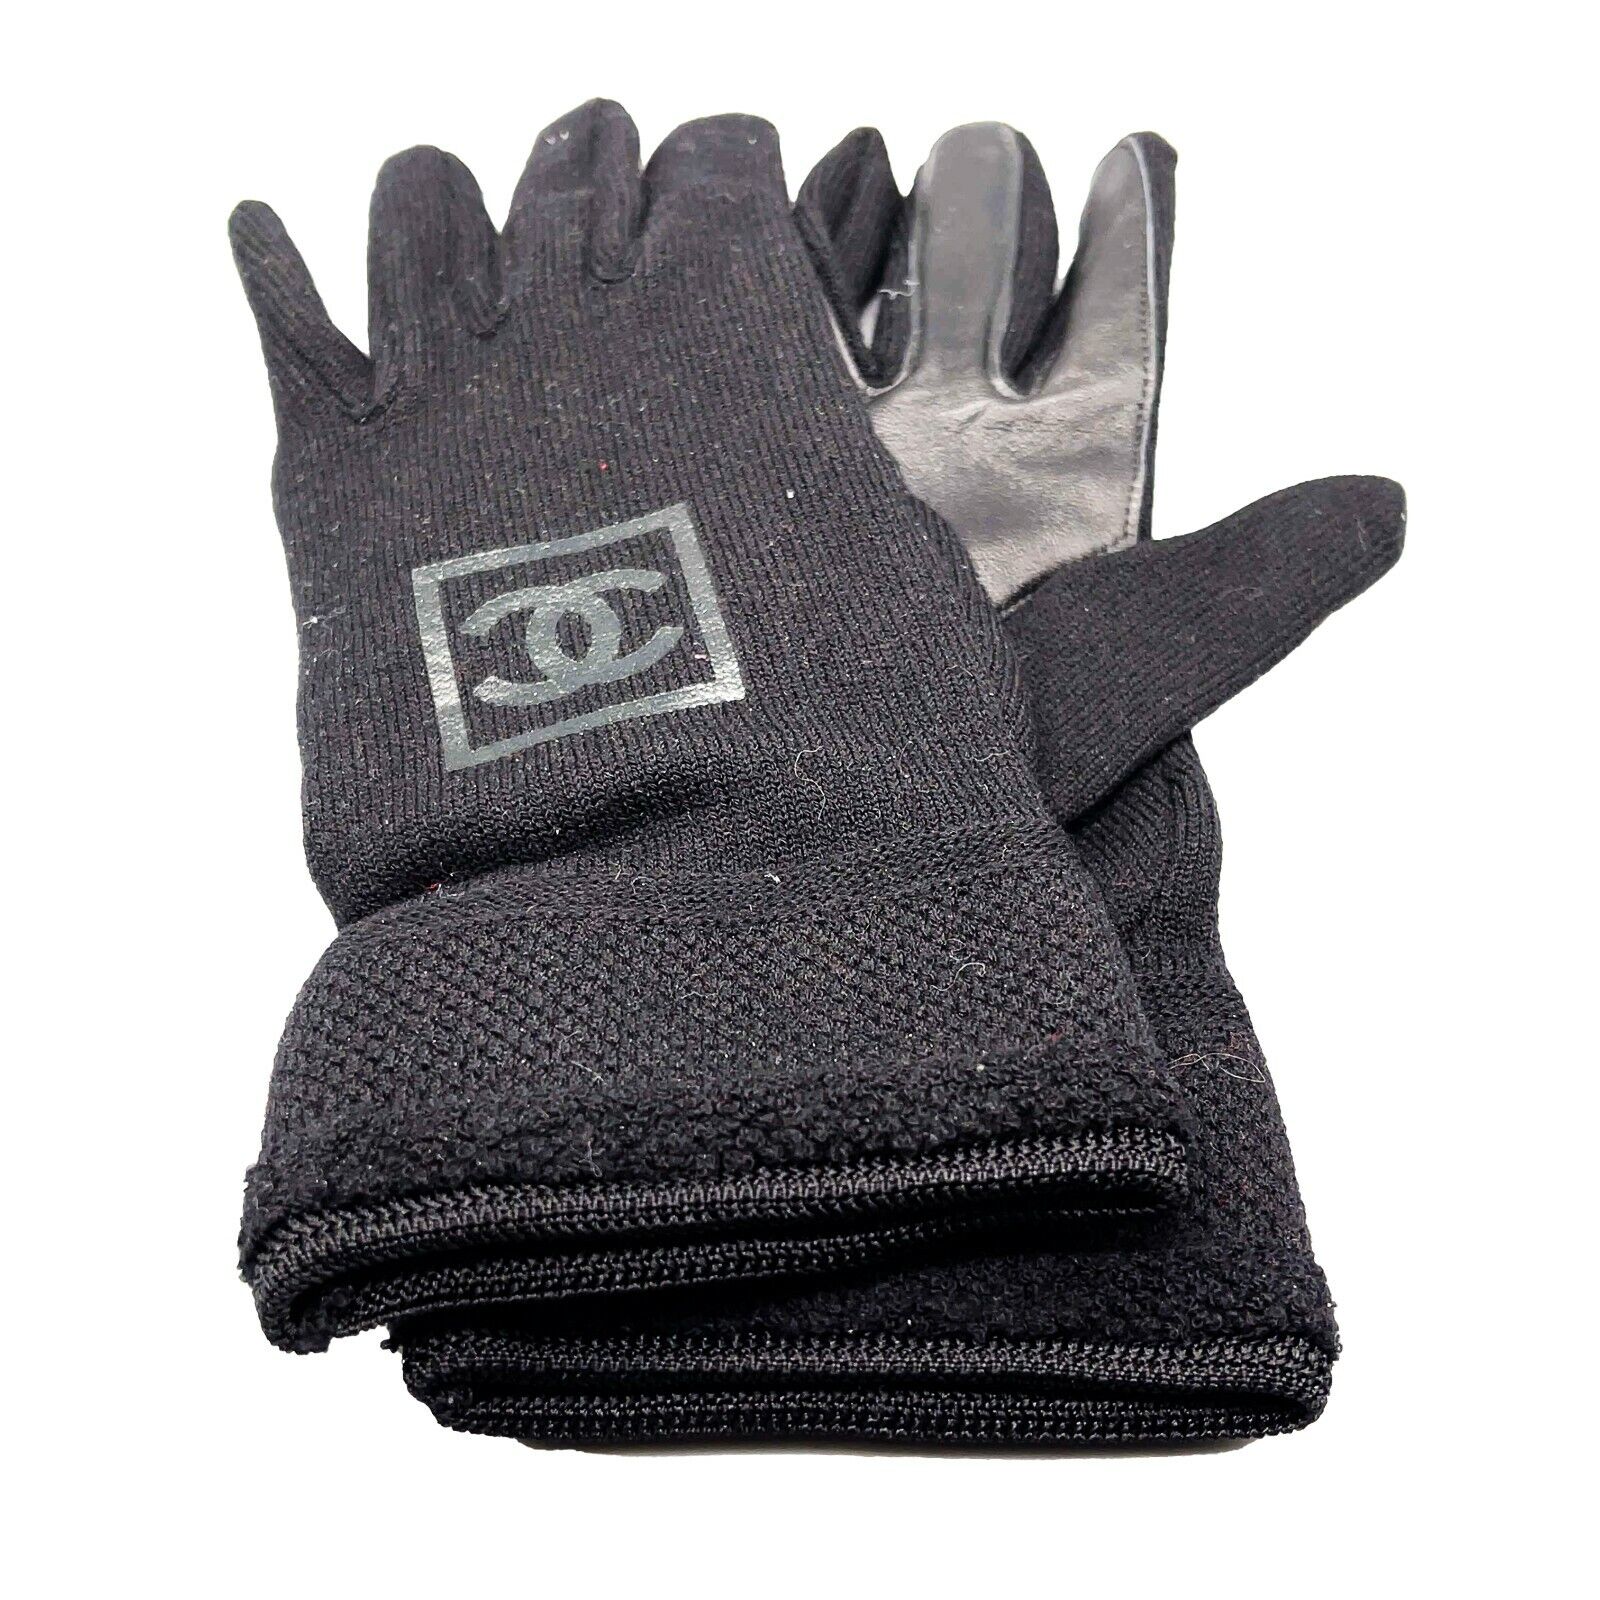 Chanel - Knit Wool Lambskin Black Leather - Sport Gloves - CC Logo - Size M